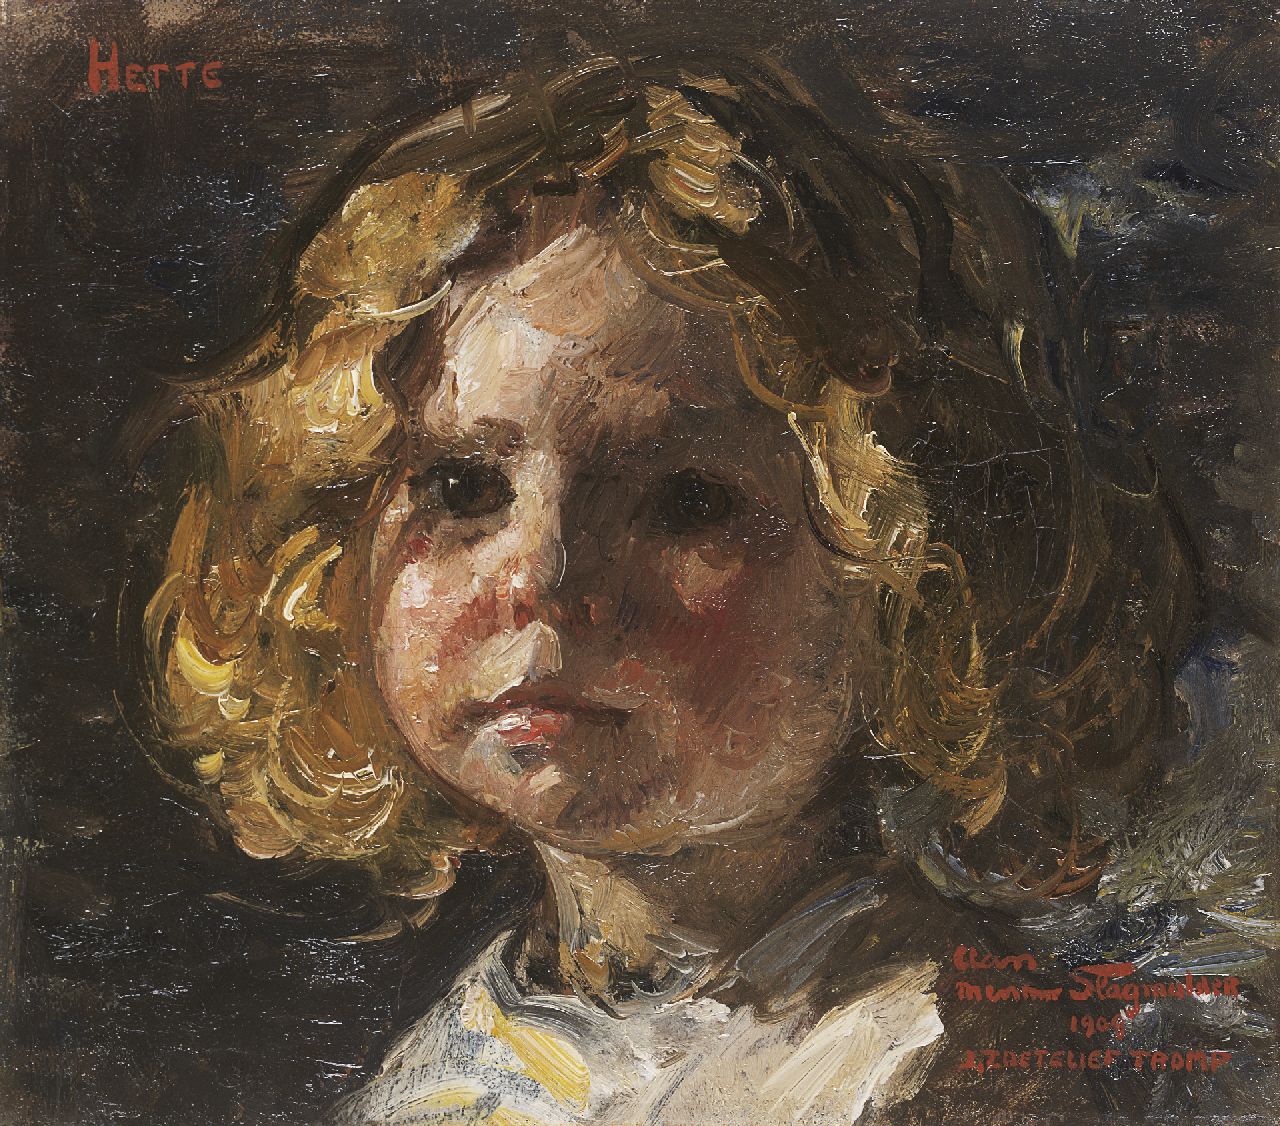 Zoetelief Tromp J.  | Johannes 'Jan' Zoetelief Tromp, Portrait of Hette, daughter of the painter, Öl auf Leinwand 27,8 x 31,6 cm, signed l.r. und dated 1909